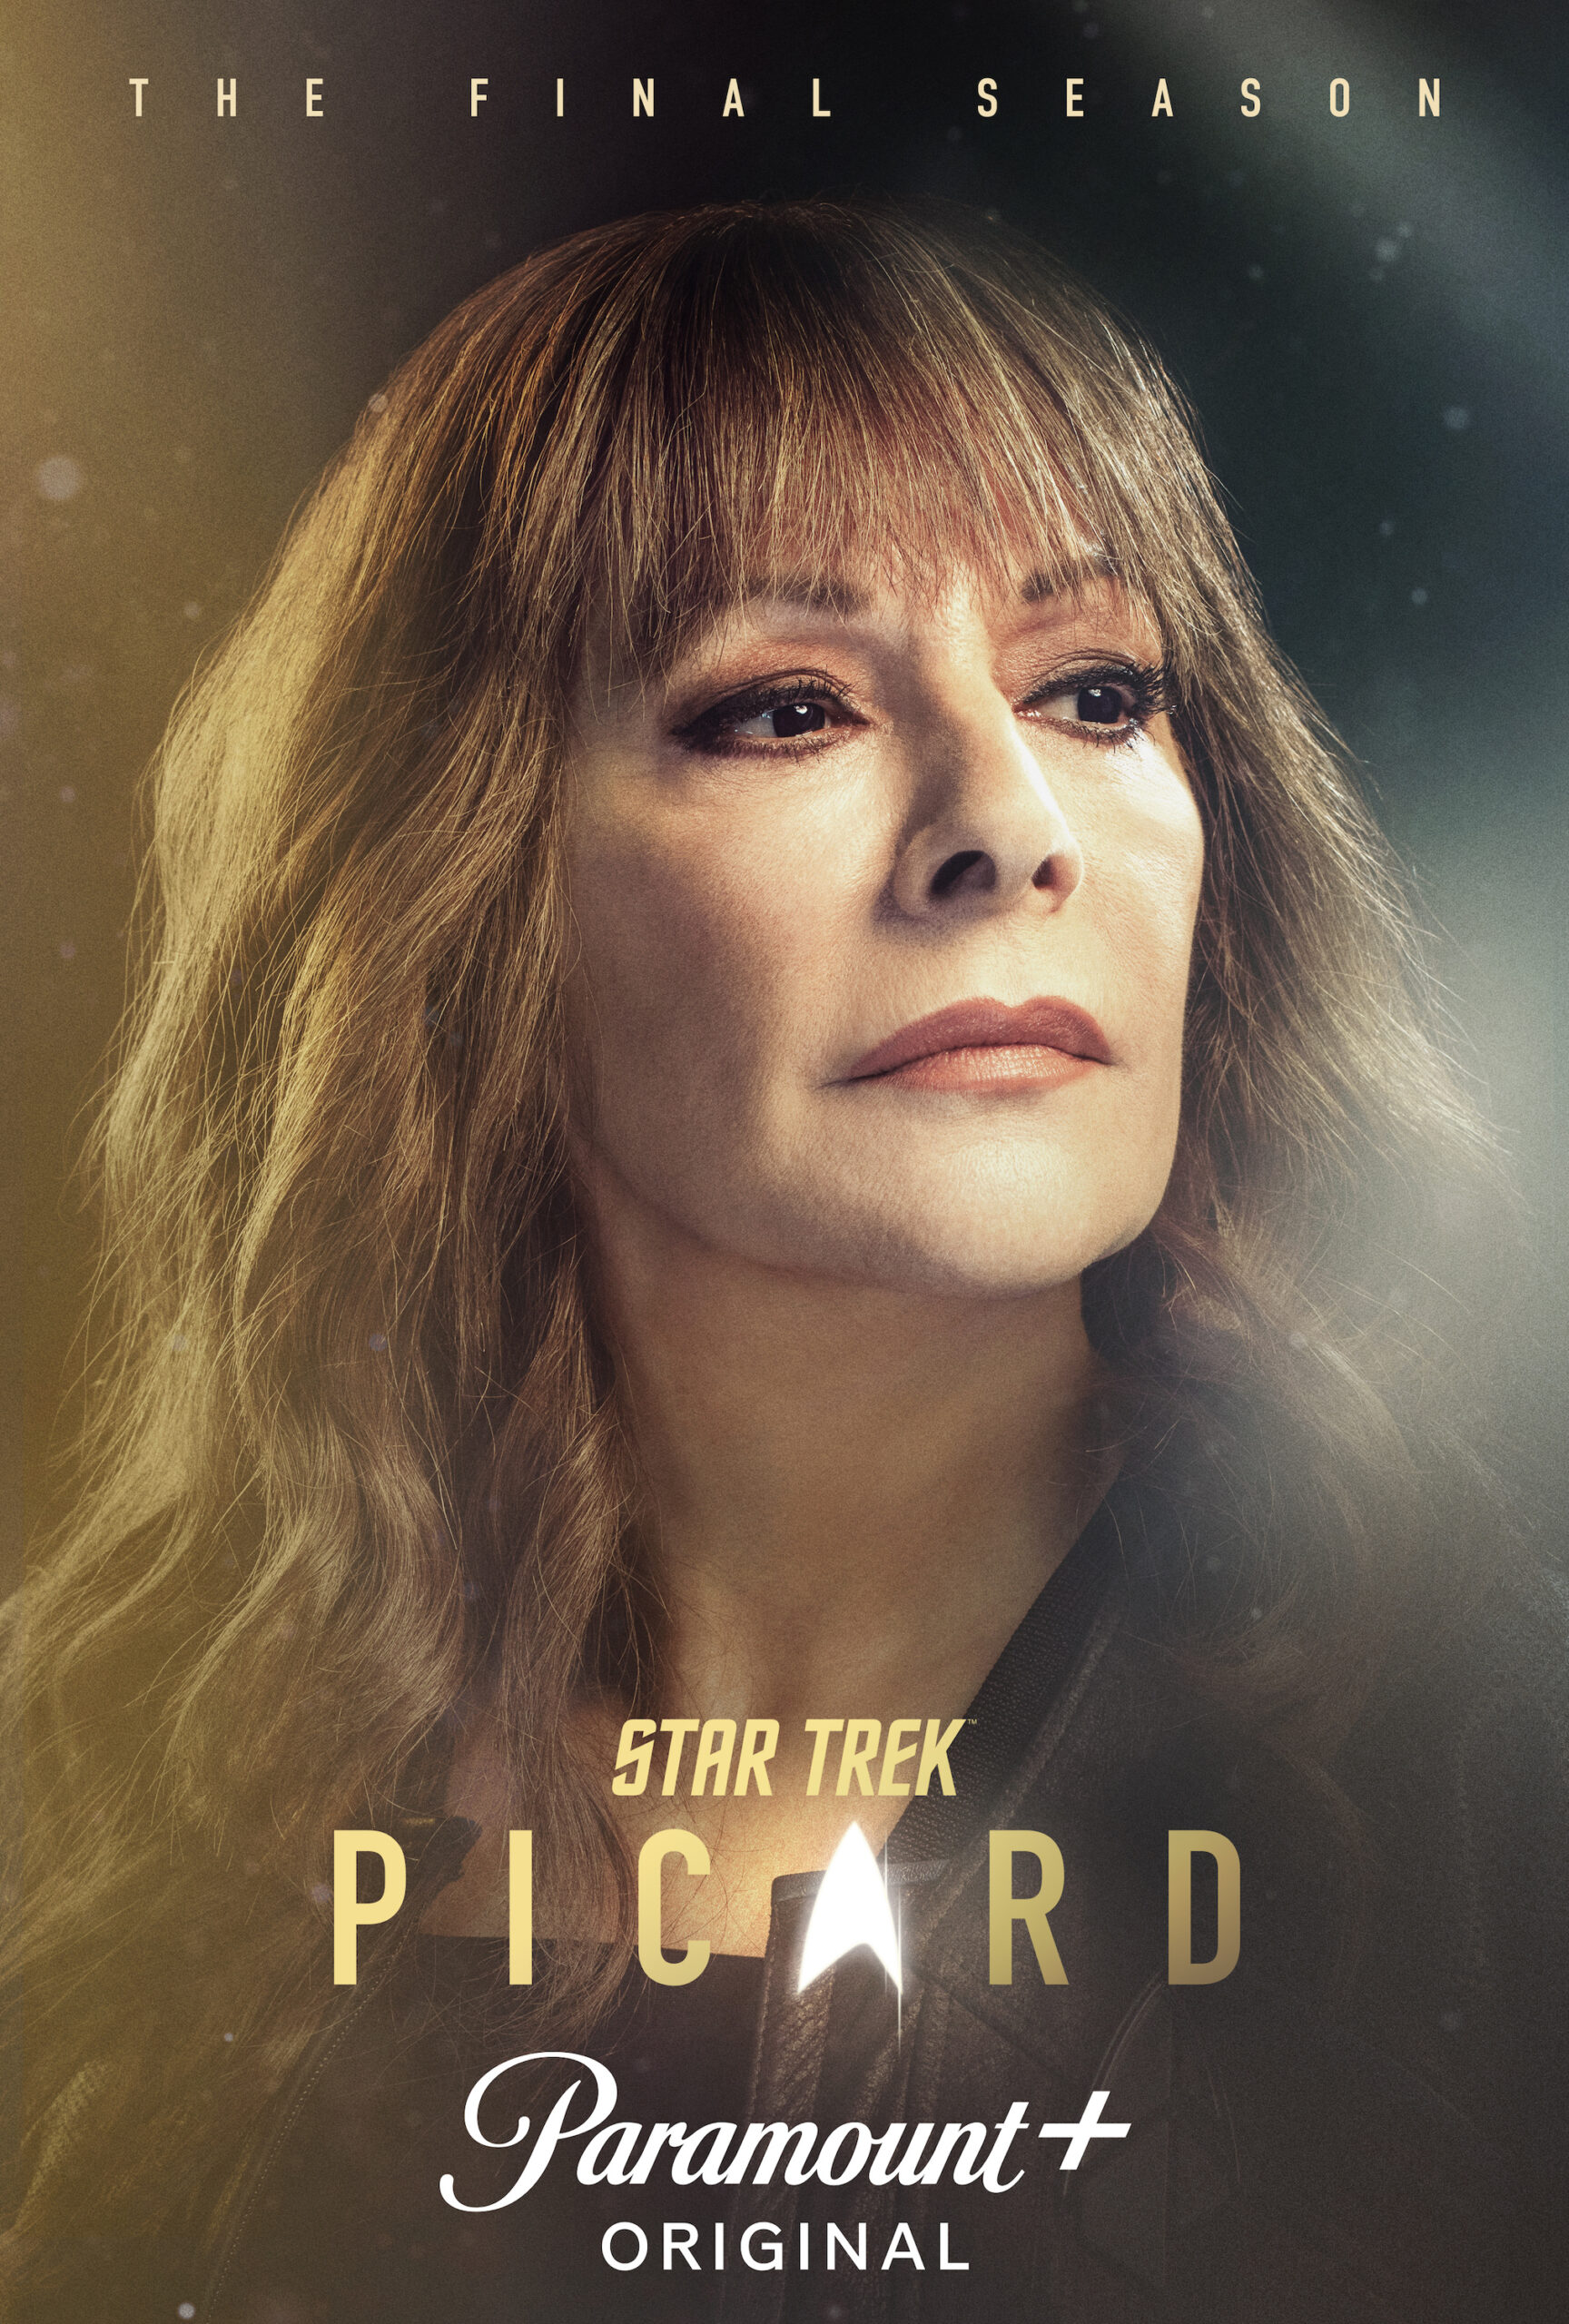 Marina Sirtis as Deanna Troi in Star Trek: Picard